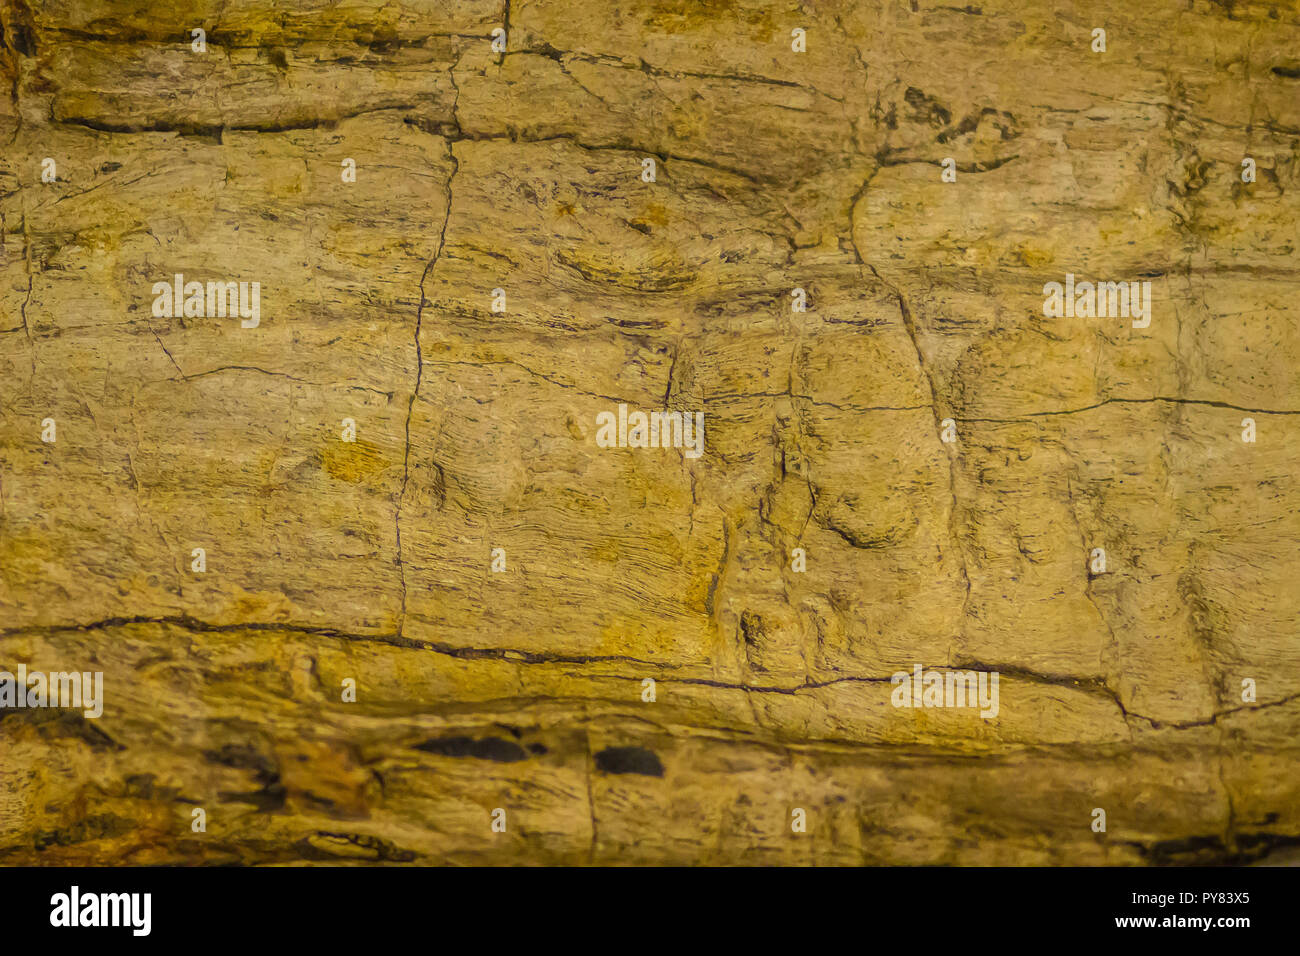 Sfondo di legno pietrificato, un tipo speciale di resti fossili di vegetazione terrestre di albero o albero-come le piante aventi transitione completamente Foto Stock